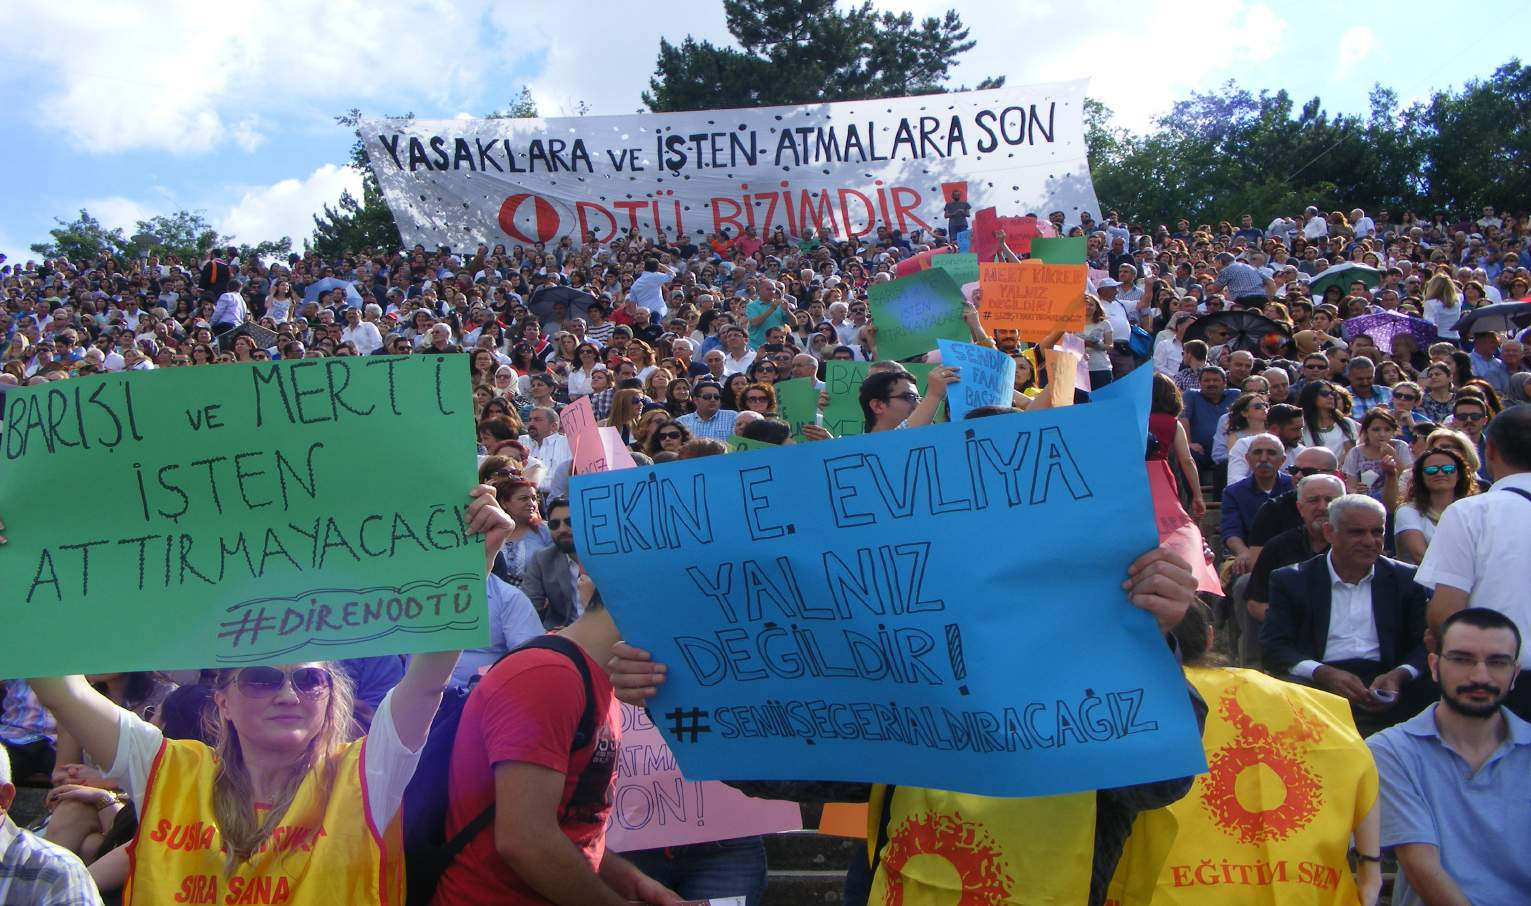 10 Temmuz 2015 / Sayı: 69 Eğitim Sen üyesi Mert Kükrer ve Barış Çelik in kamu görevinden çıkarılması talebiyle YÖK e sevk edilmesi üzerine ODTÜ emekçileri, Rektörlük önüne direniş çadırı kurdular.